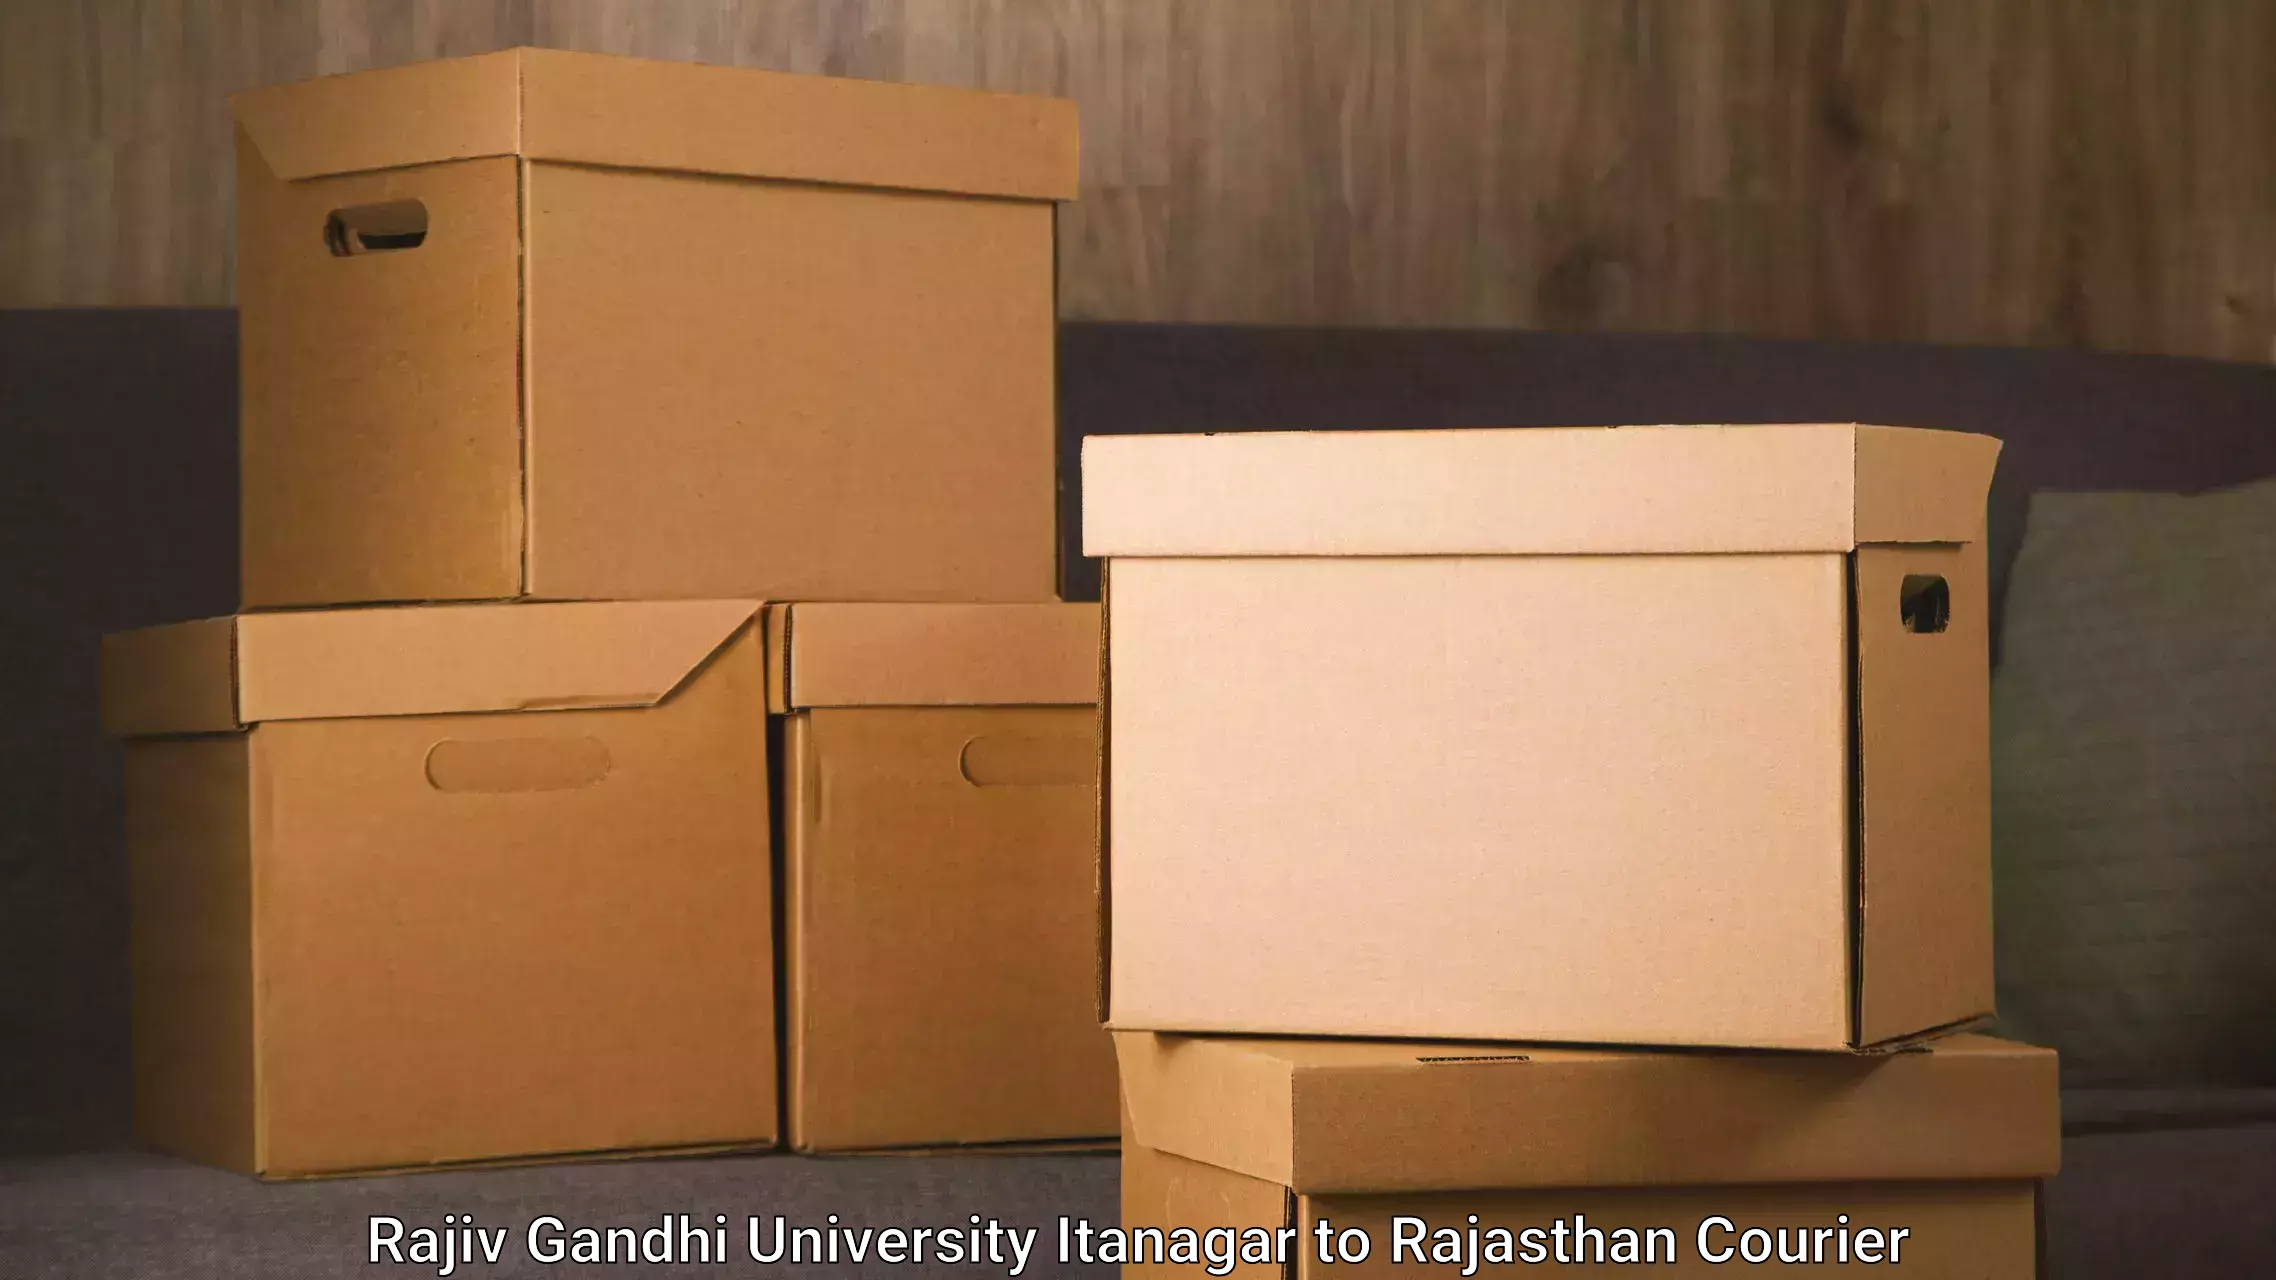 Large-scale shipping solutions Rajiv Gandhi University Itanagar to Kalwar